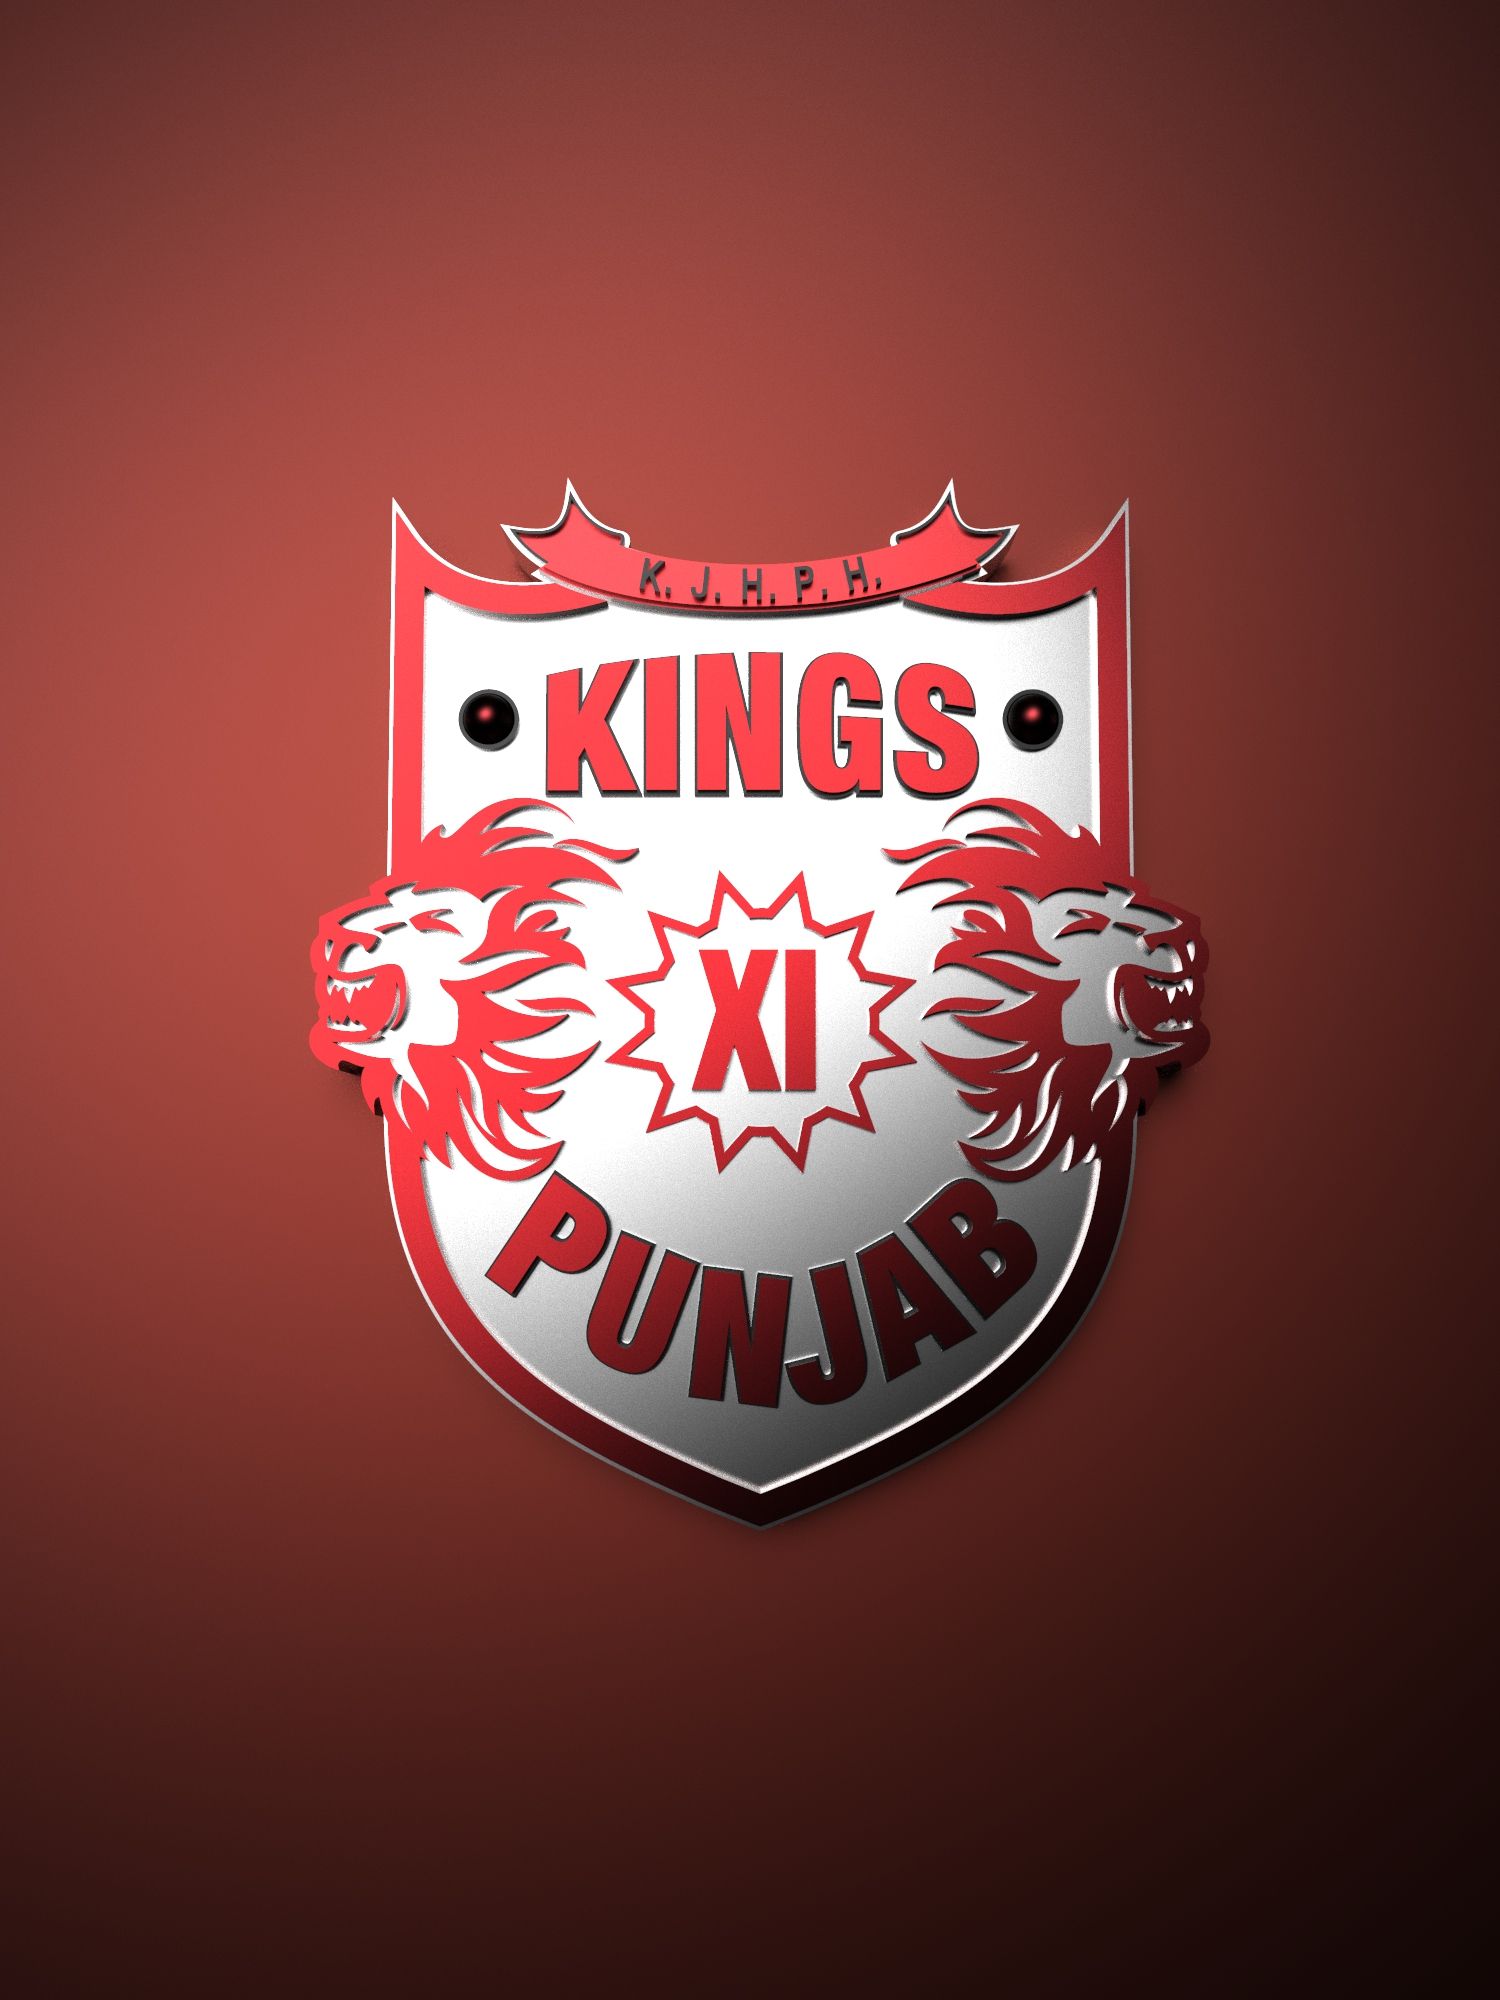 Kings XI Punjab IPL metallic logo poster painting. Ipl, Punjab, Cricket wallpaper